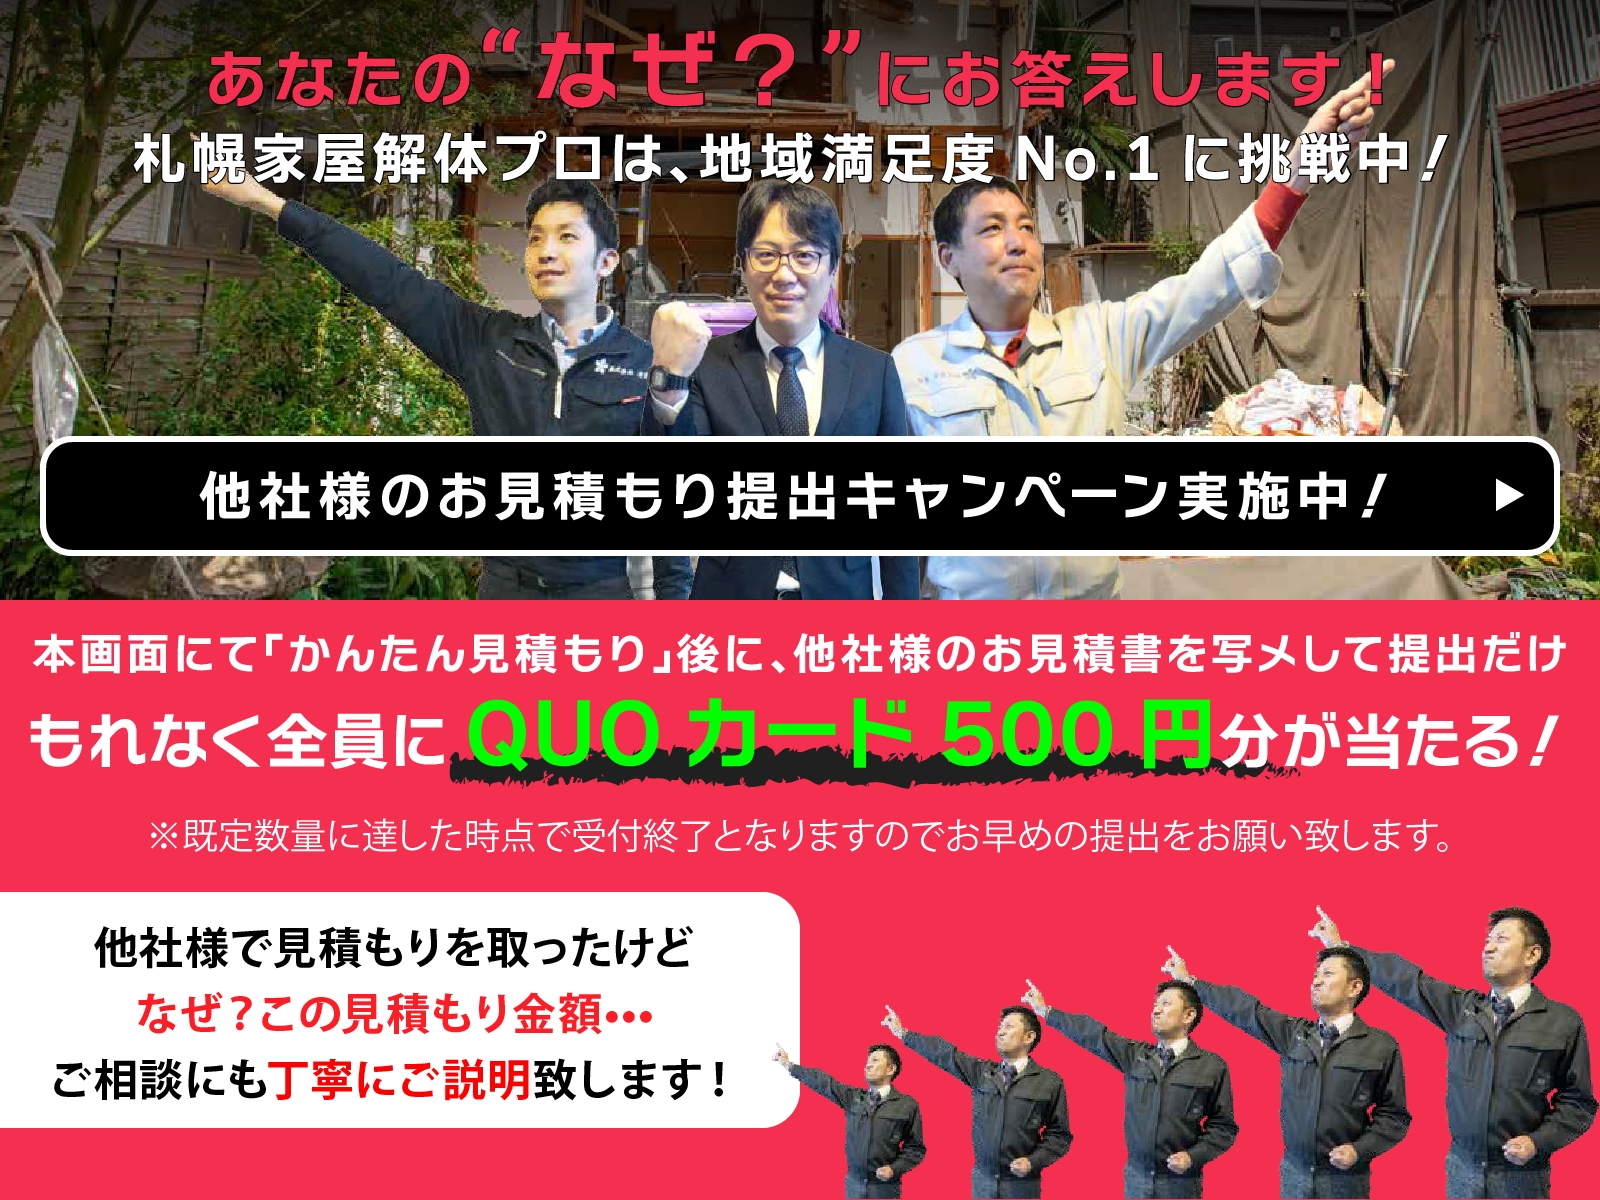 札幌家屋解体シミュレーション 他社様のお見積り提出キャンペーン実施中！